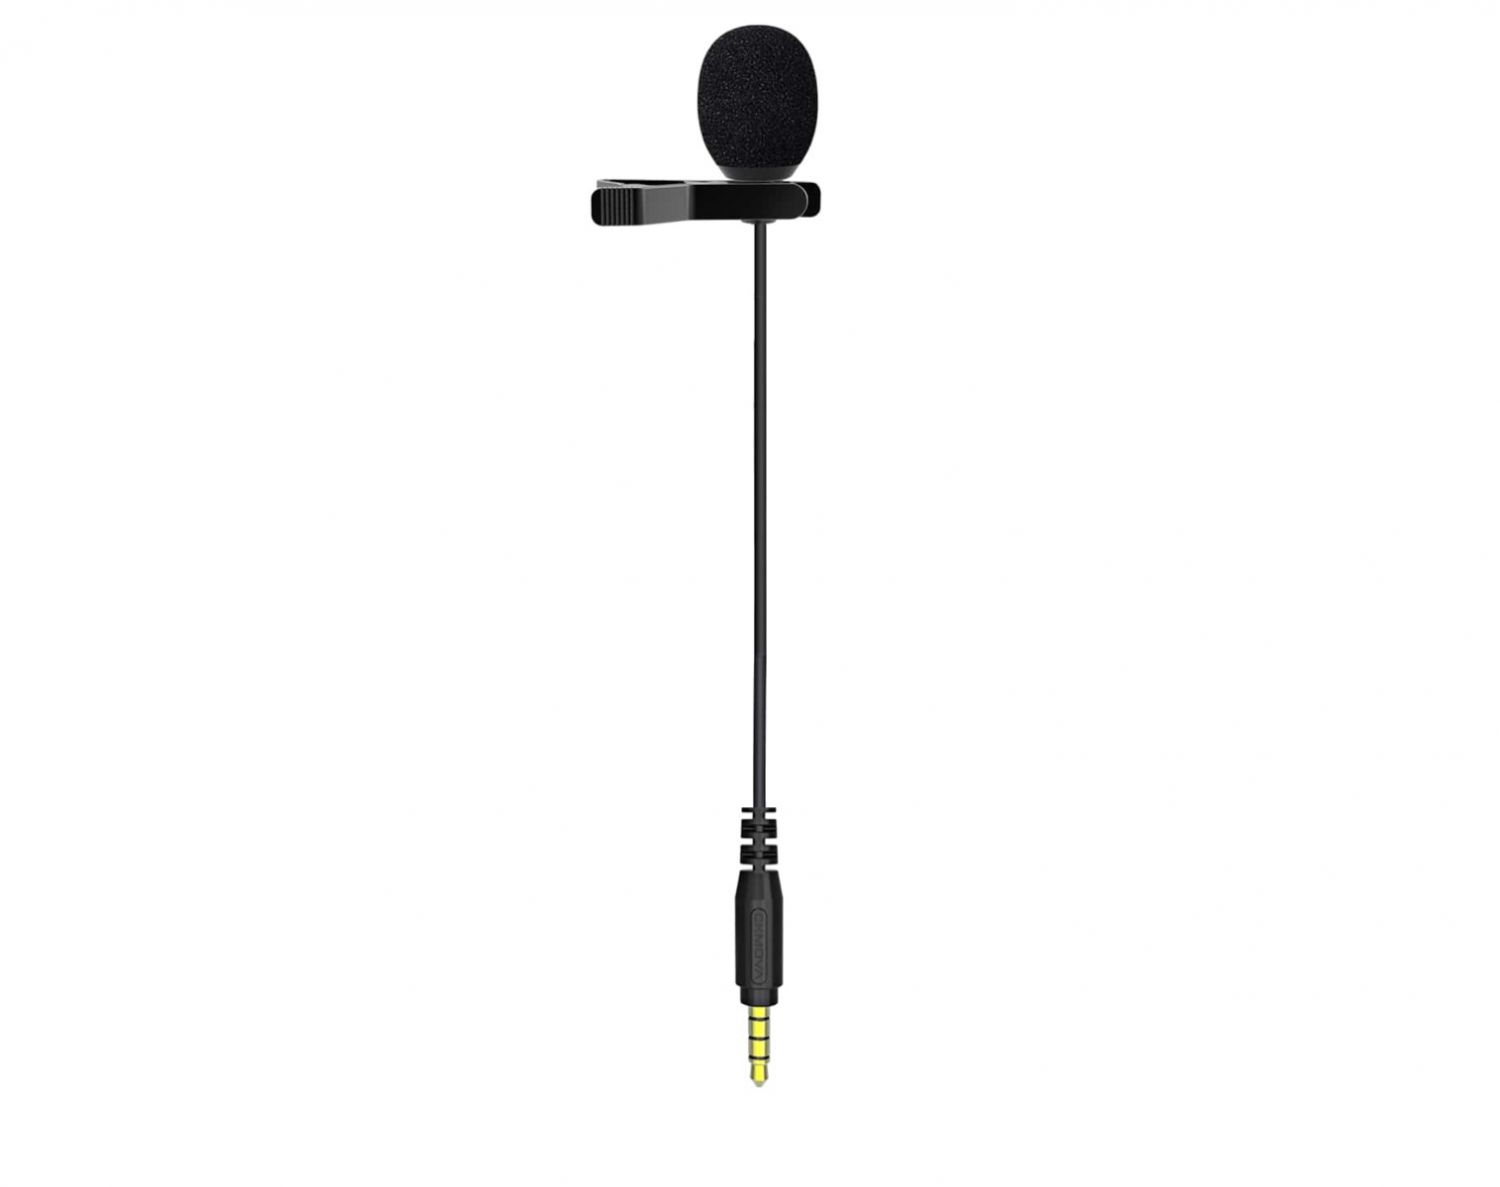 CKMOVA AC-VM1 - mikrofon lavalier w kolorze czarnym